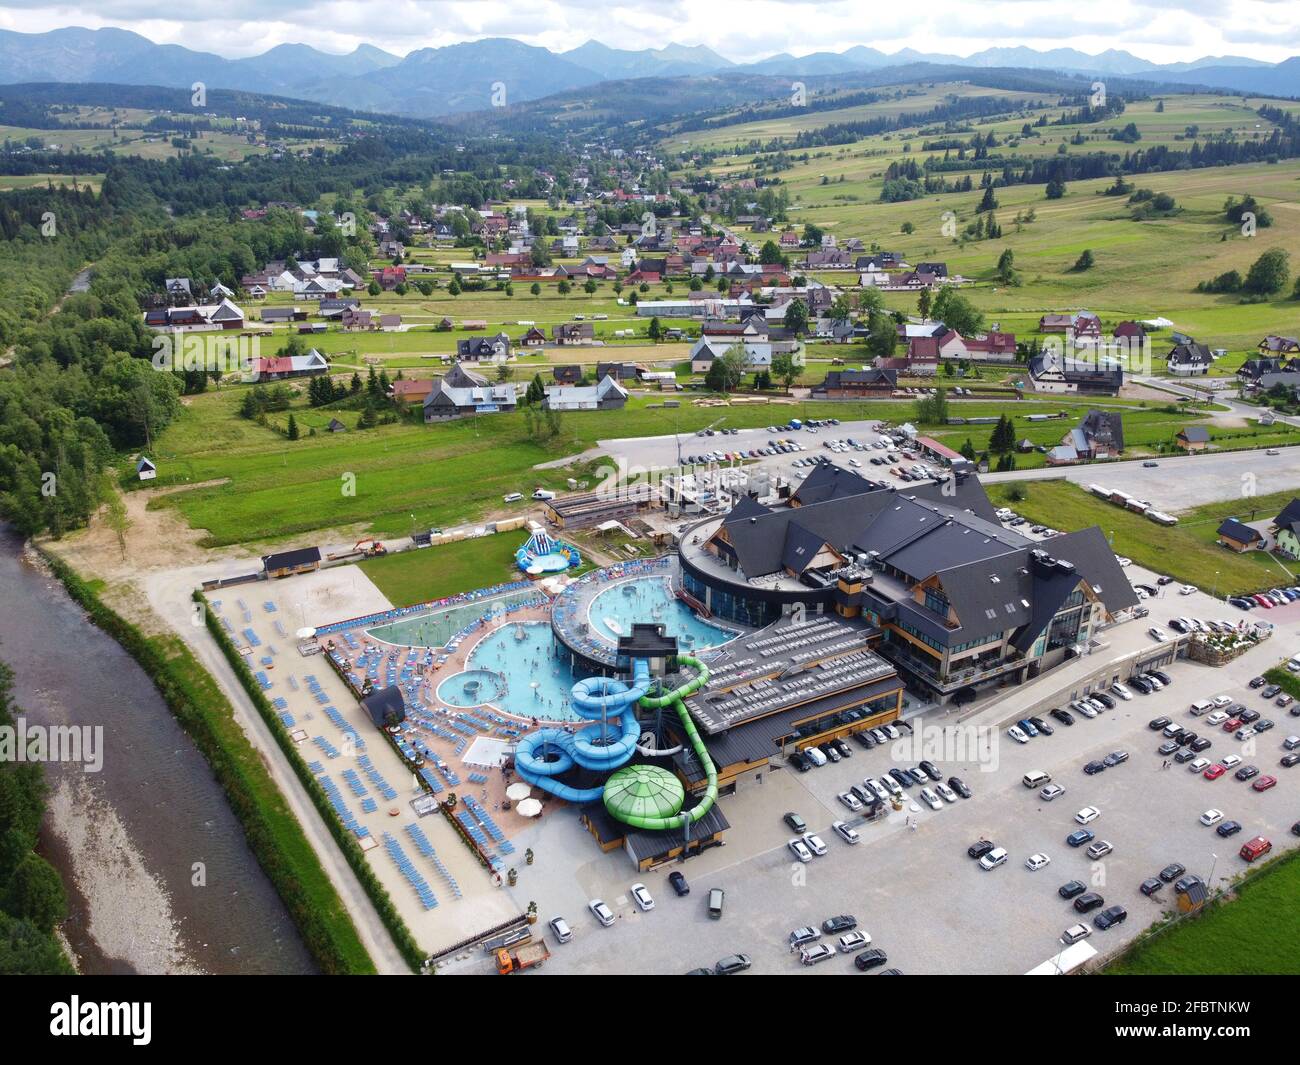 Les plus grands bains thermaux de Pologne, village de Chocholow, région de Tatras. Vue aérienne du drone Banque D'Images